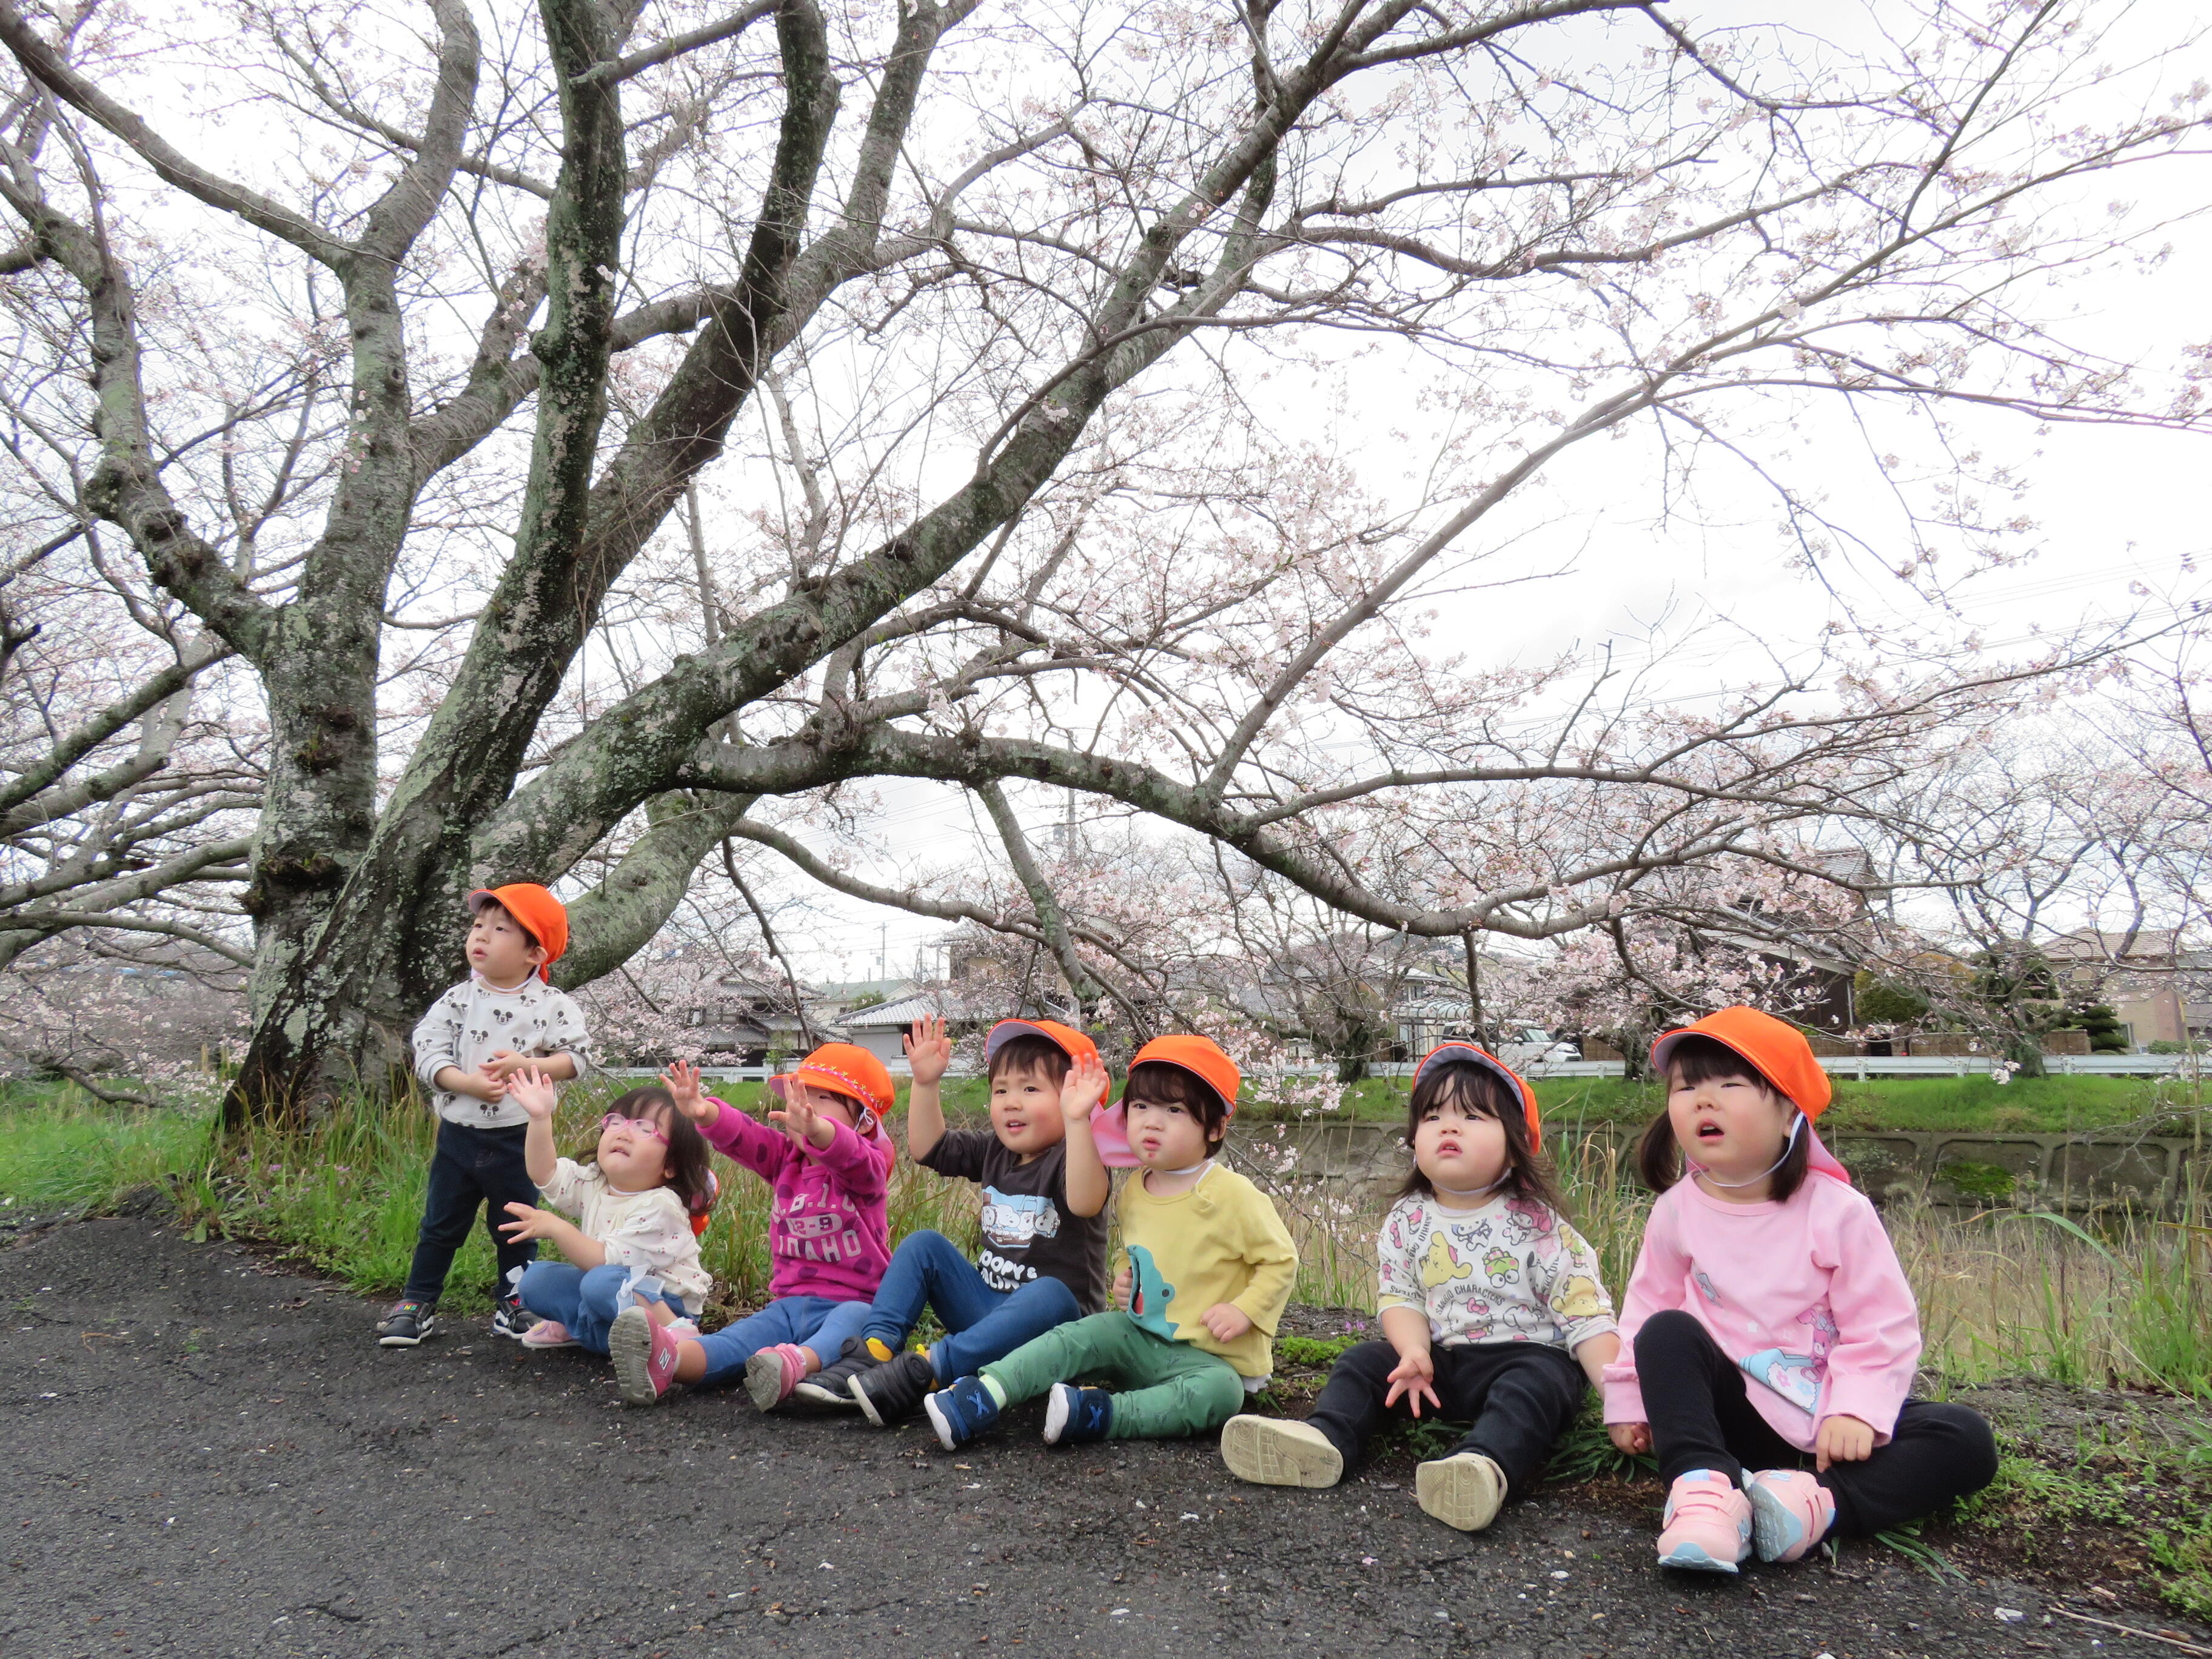 末武川の桜が、4月に入ってようやく咲き始めました。桜を愛でる期間はほんのわずかだけれど、春の訪れはうきうきしますね。